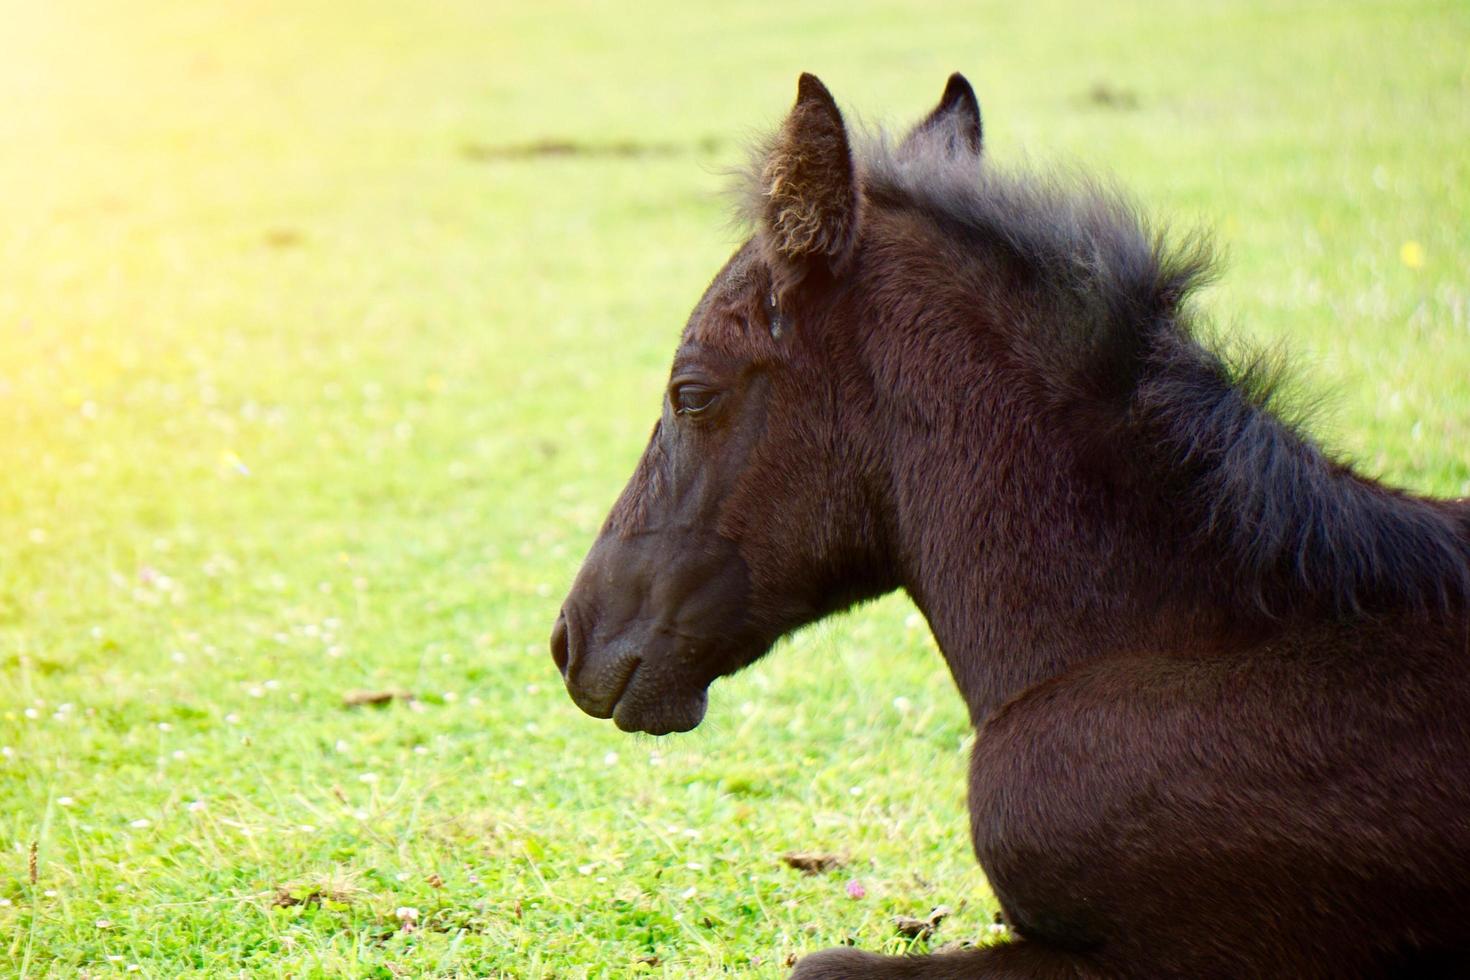 lindo retrato de cavalo marrom no prado foto